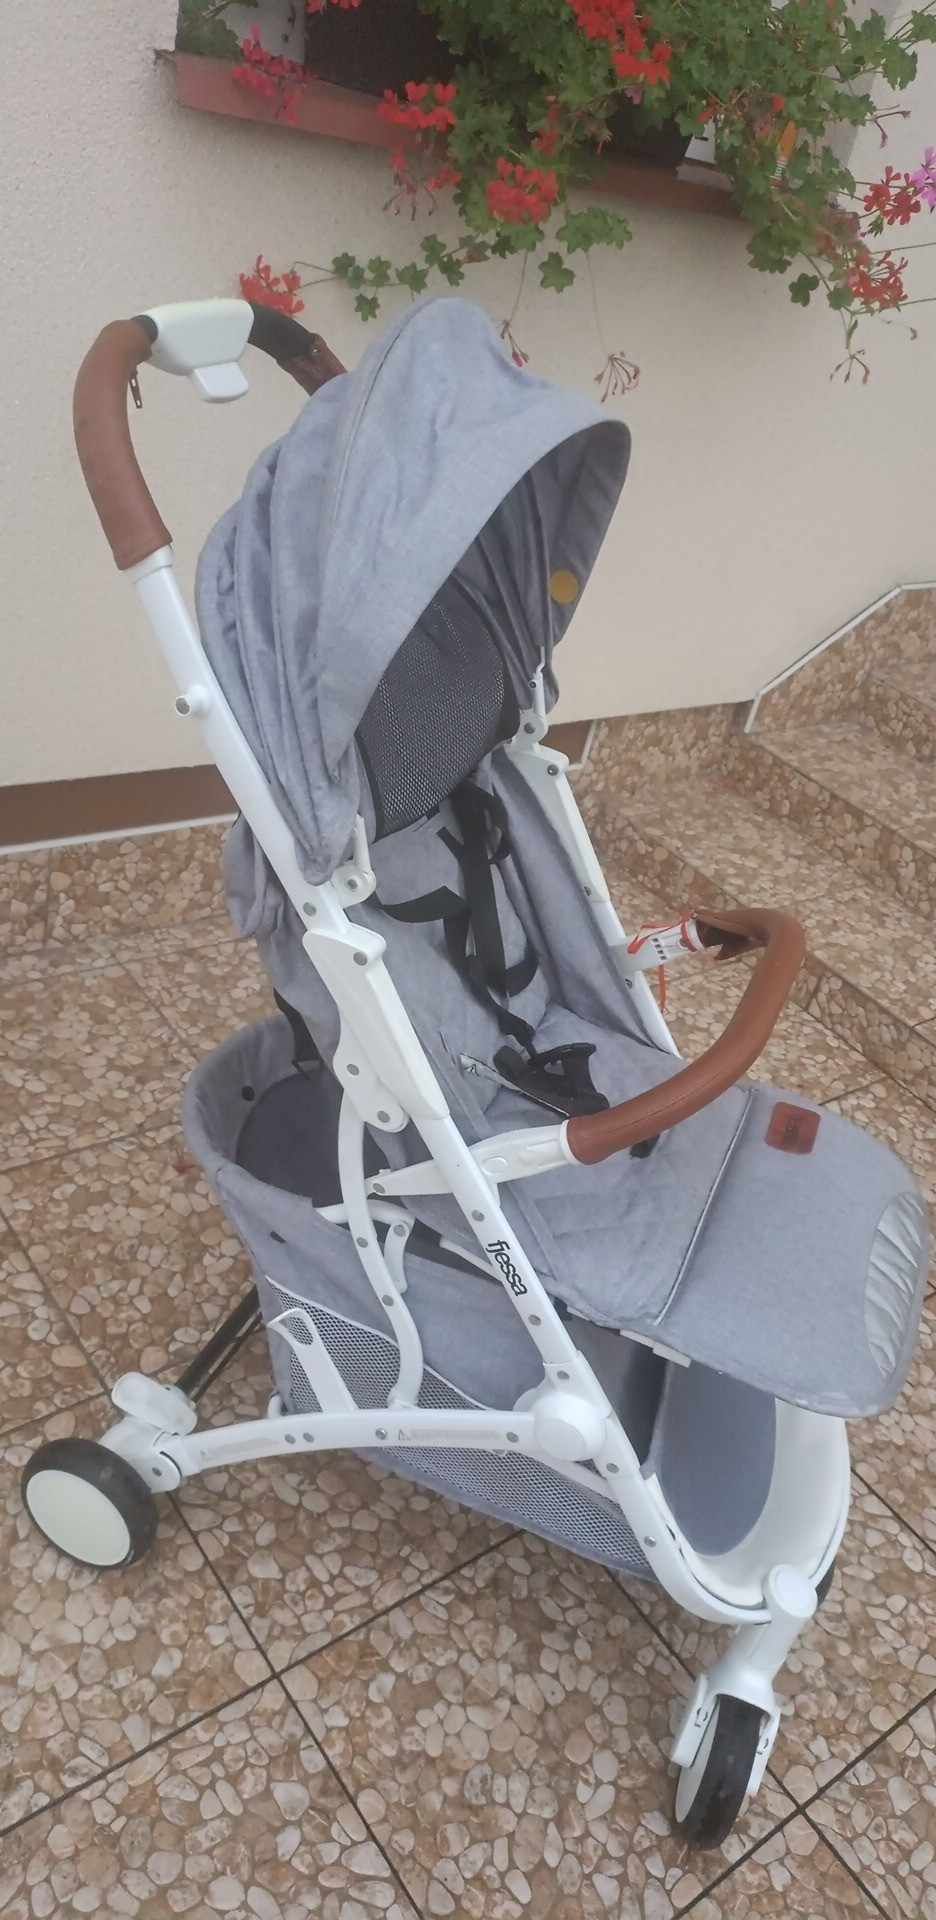 Spacerówka dla dziecka